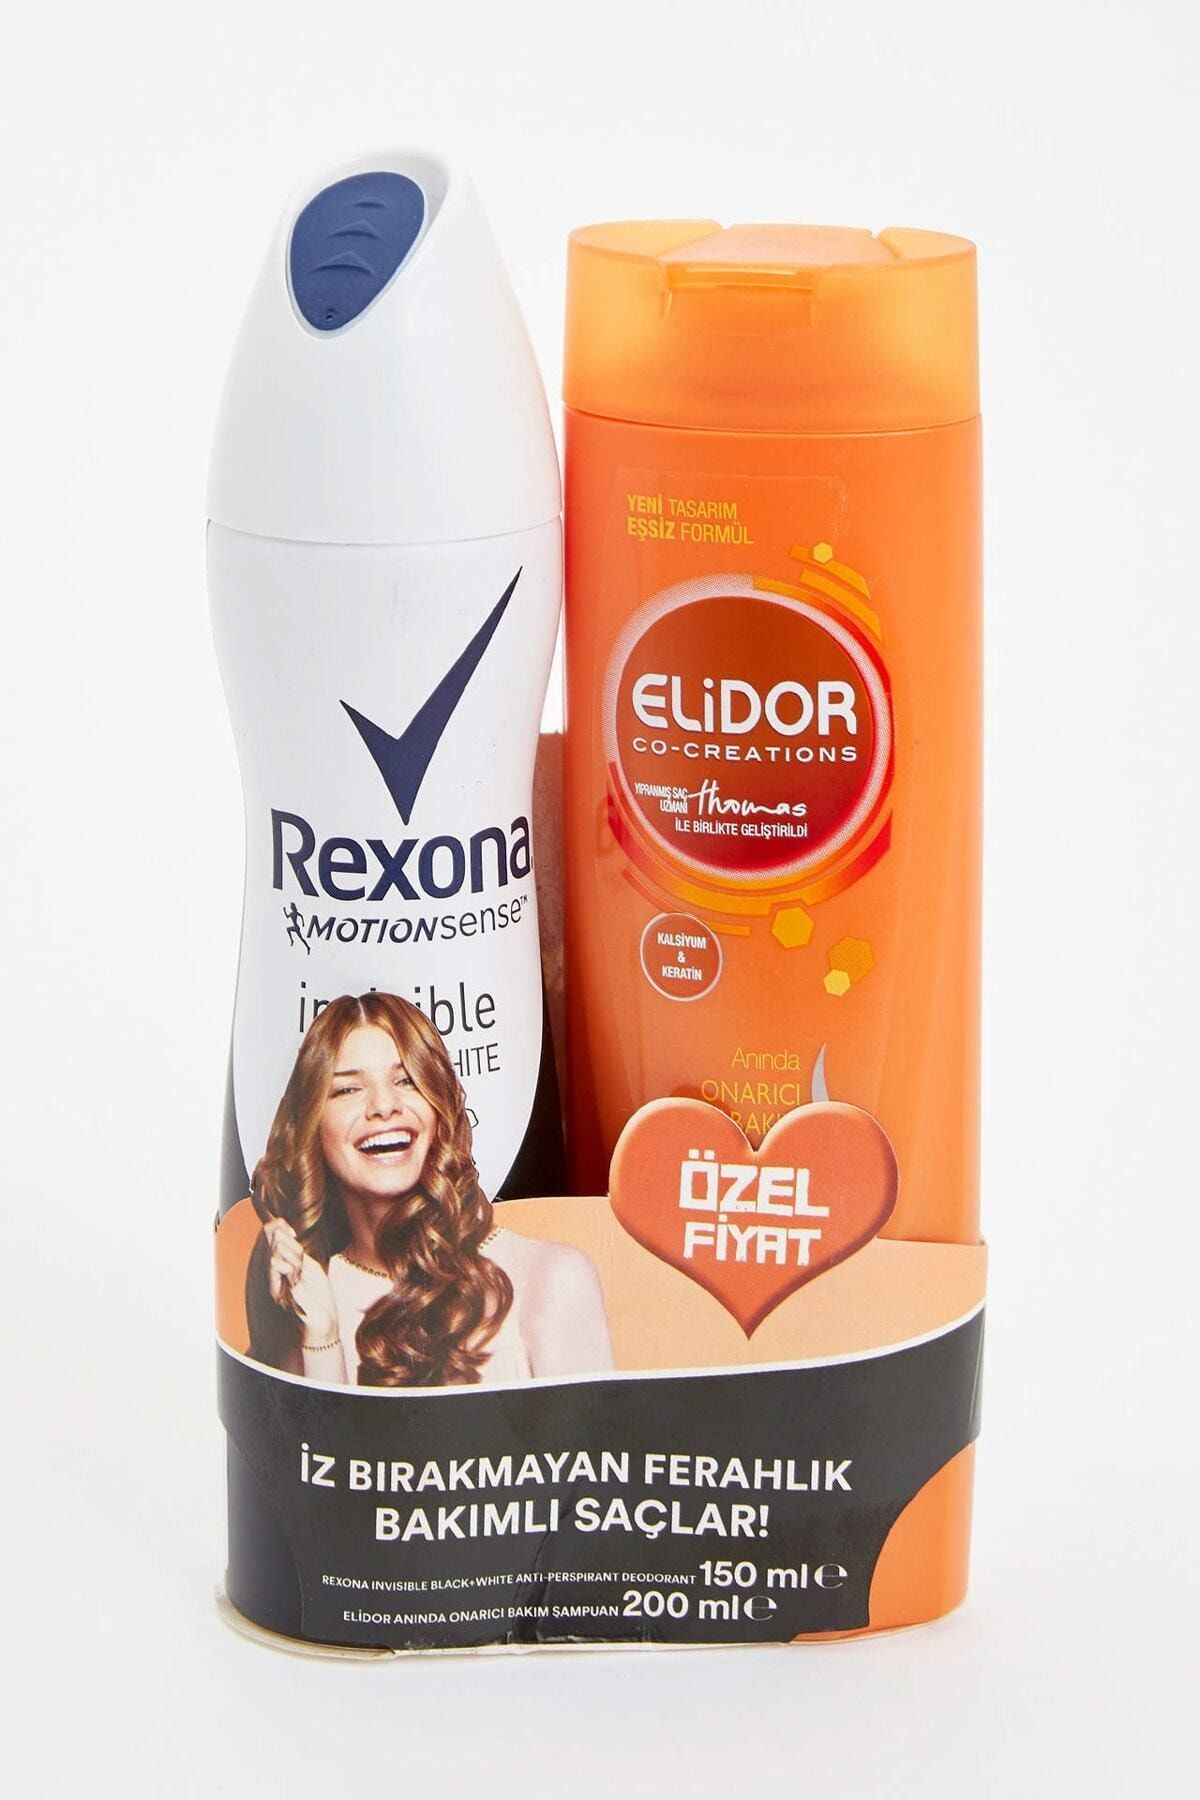 Rexona Kadın Deodorant Sprey Invisible Black&White 150 ml + Elidor Şampuan Onarıcı Bakım 200 ml